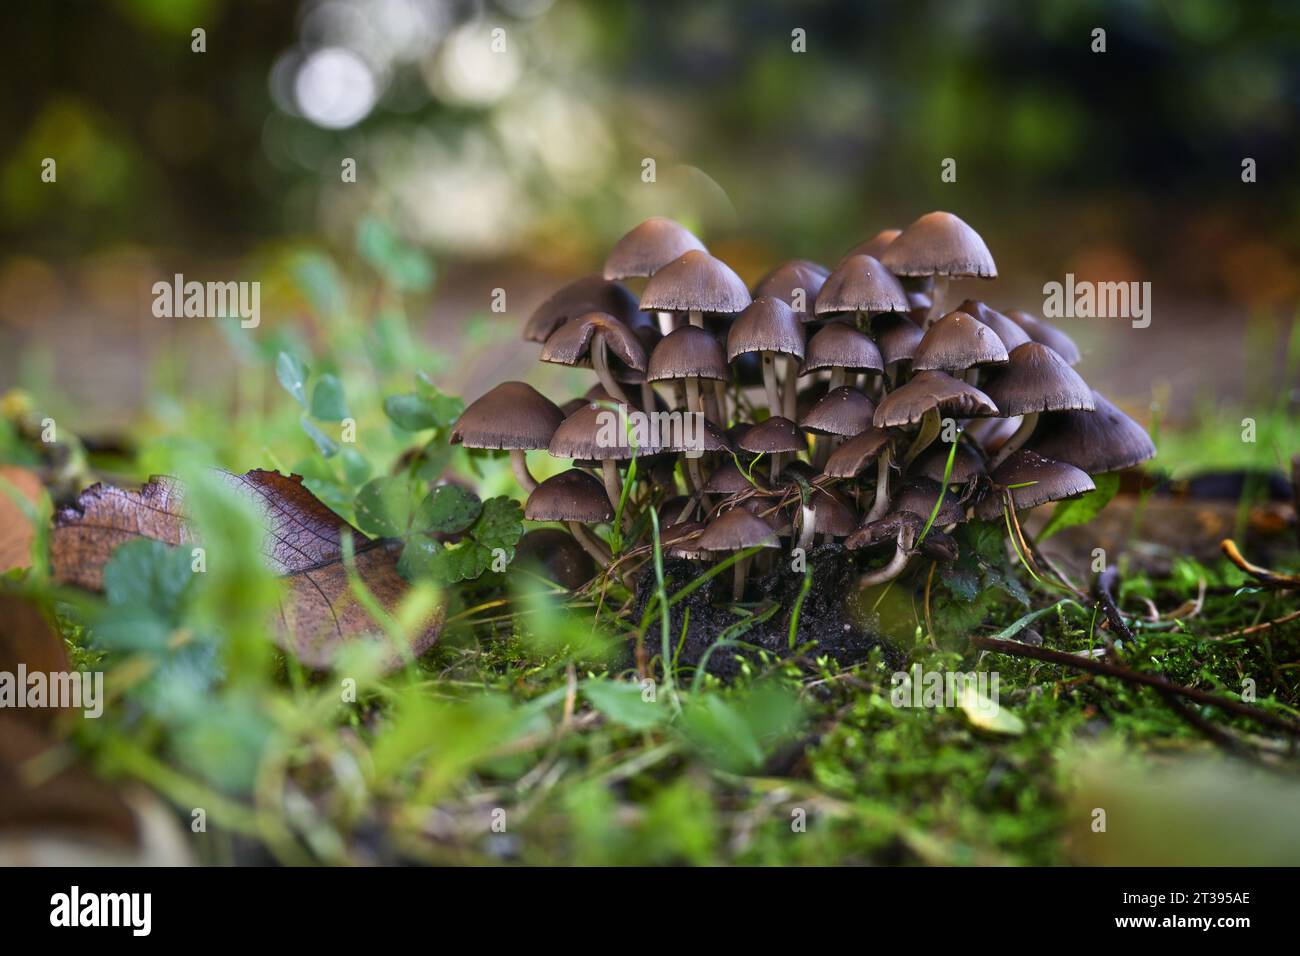 Groupe de champignons (probablement Psathyrella pygmaea) avec des calottes brunes et de fines tiges creuses blanches dans la mousse sous les arbres dans une forêt de feuillus, copie spac Banque D'Images